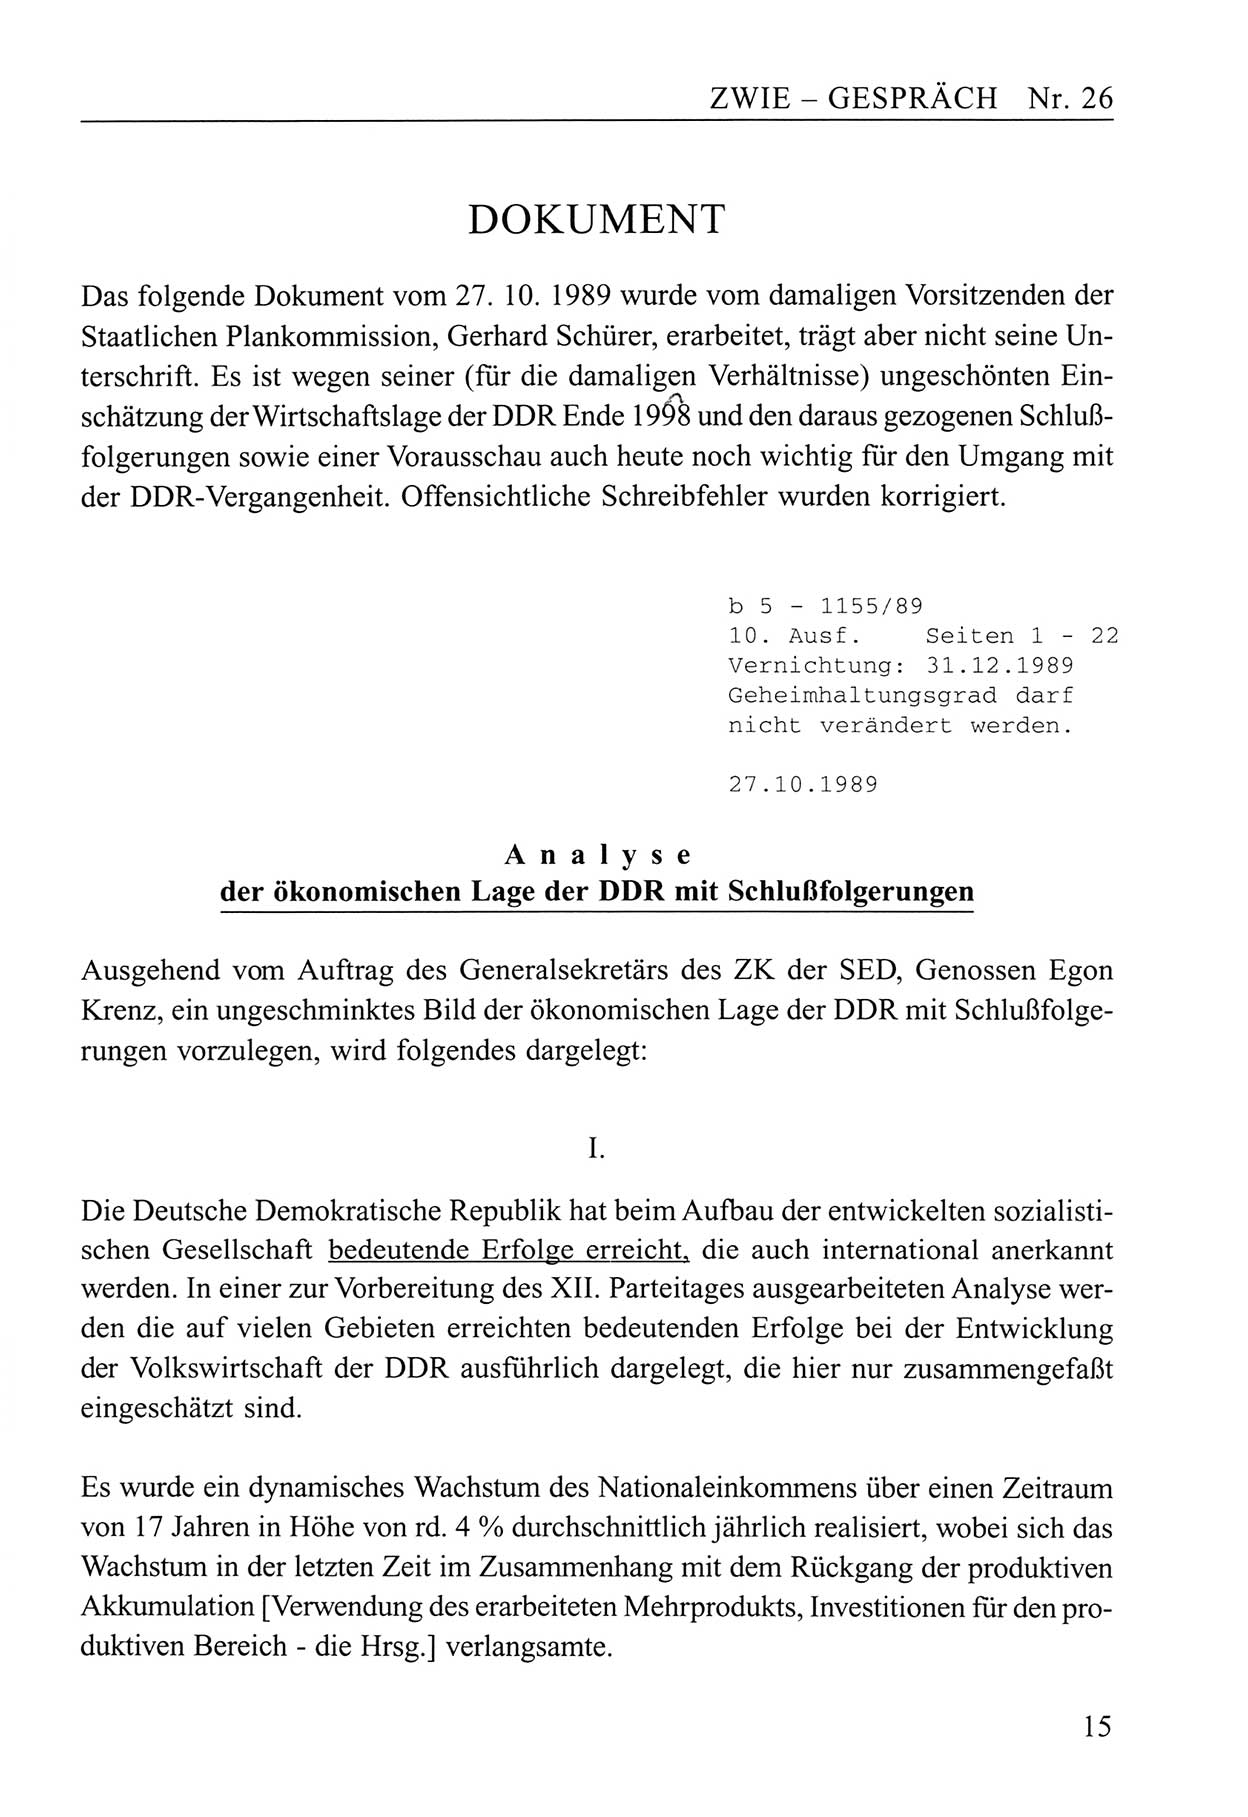 Zwie-Gespräch, Beiträge zum Umgang mit der Staatssicherheits-Vergangenheit [Deutsche Demokratische Republik (DDR)], Ausgabe Nr. 26, Berlin 1995, Seite 15 (Zwie-Gespr. Ausg. 26 1995, S. 15)